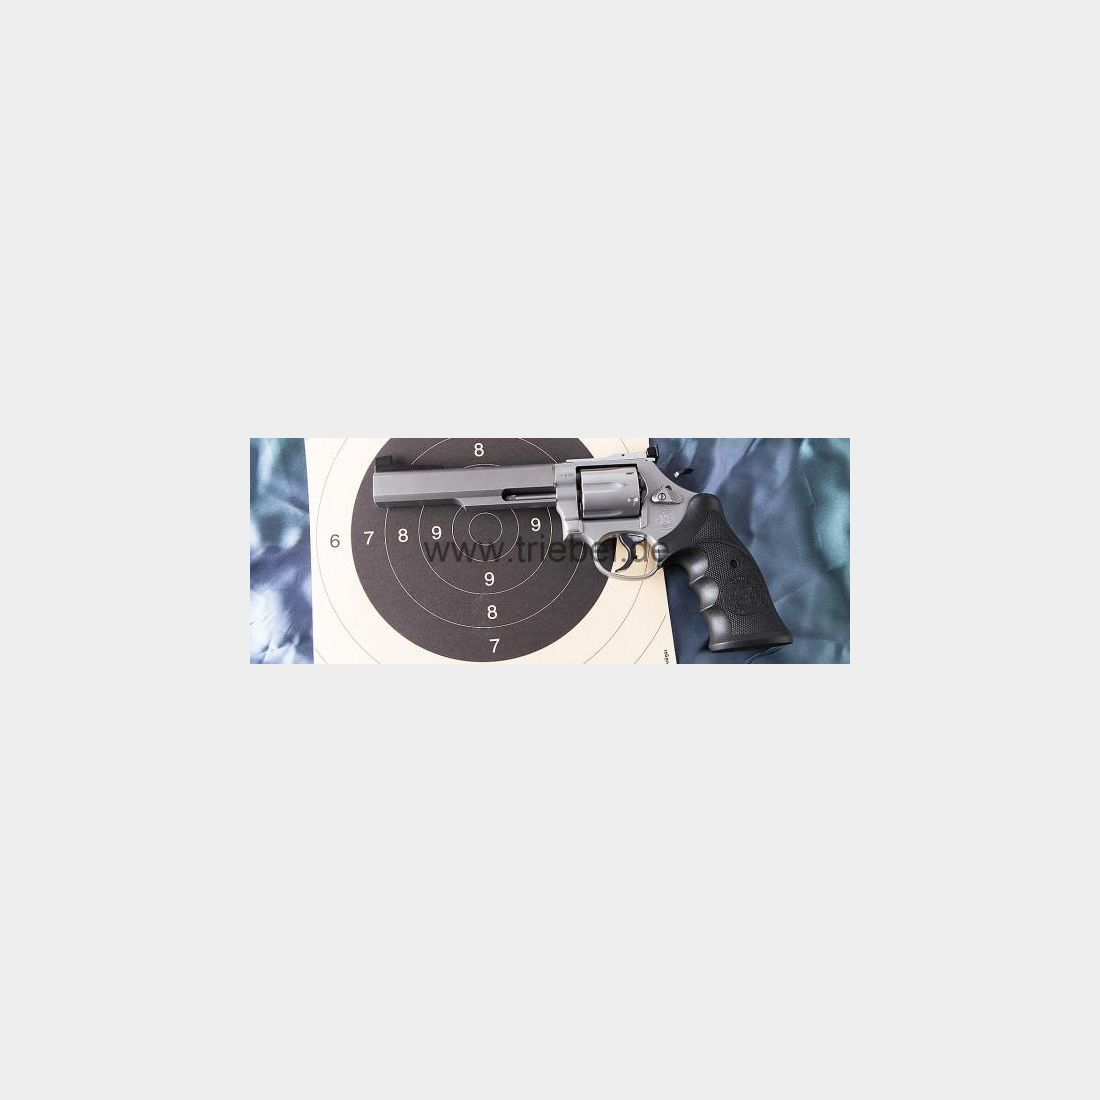 CLUB 30 Revolver Mod. 686 -6' HBH DSB .357Mag   LPA-Visier